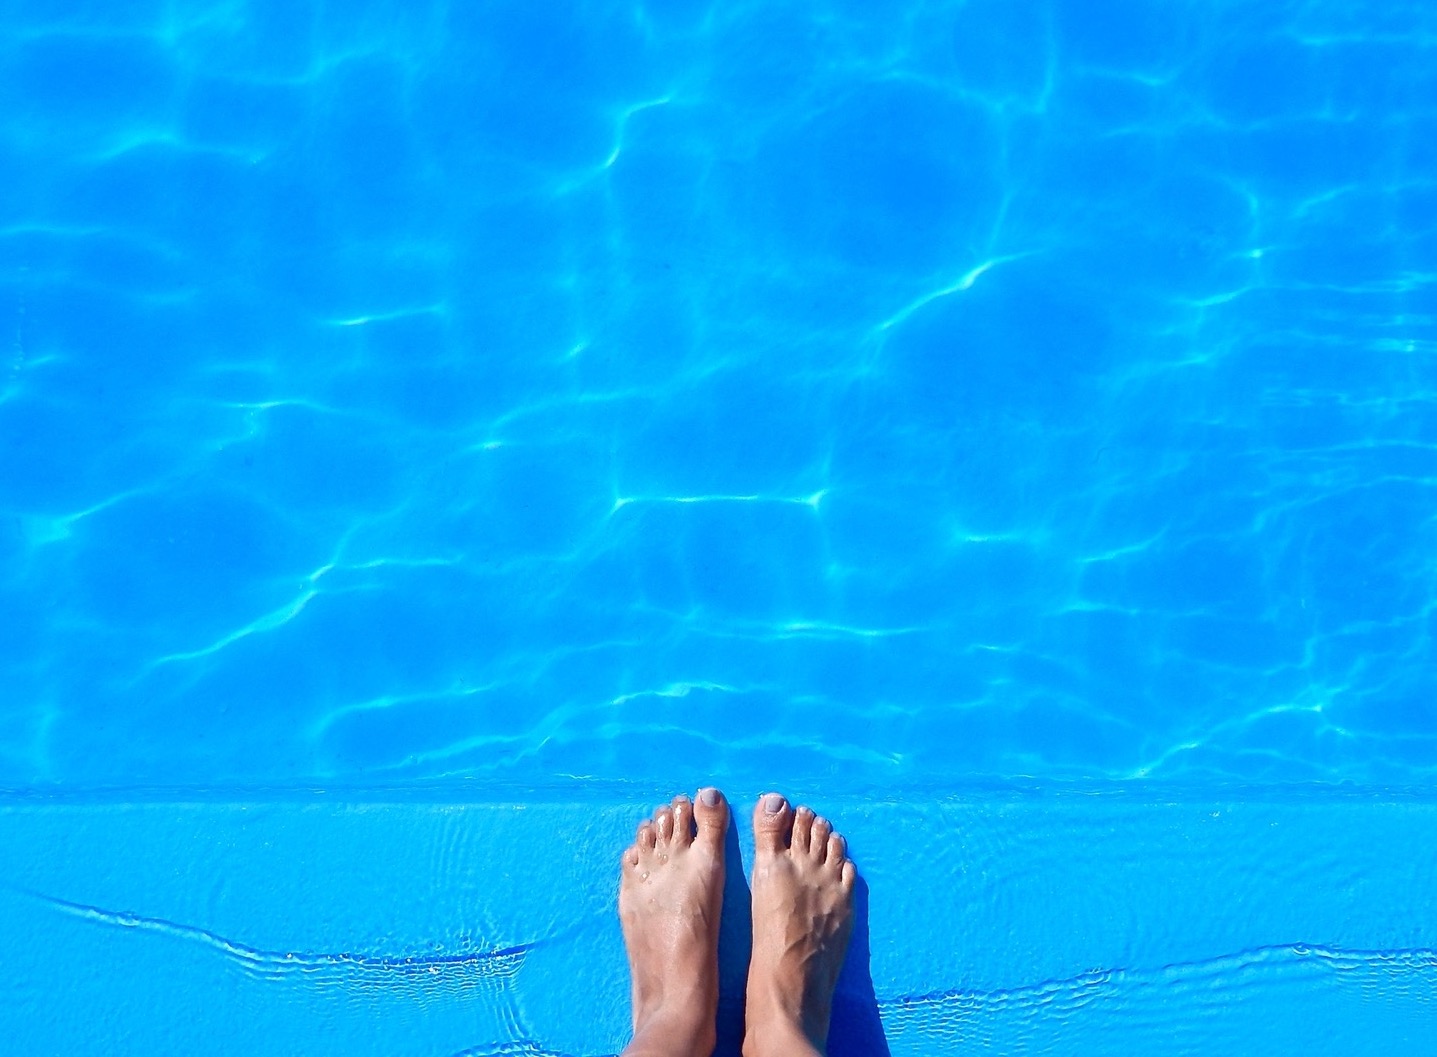 Afbeelding:Voeten op de rand van een zwembad